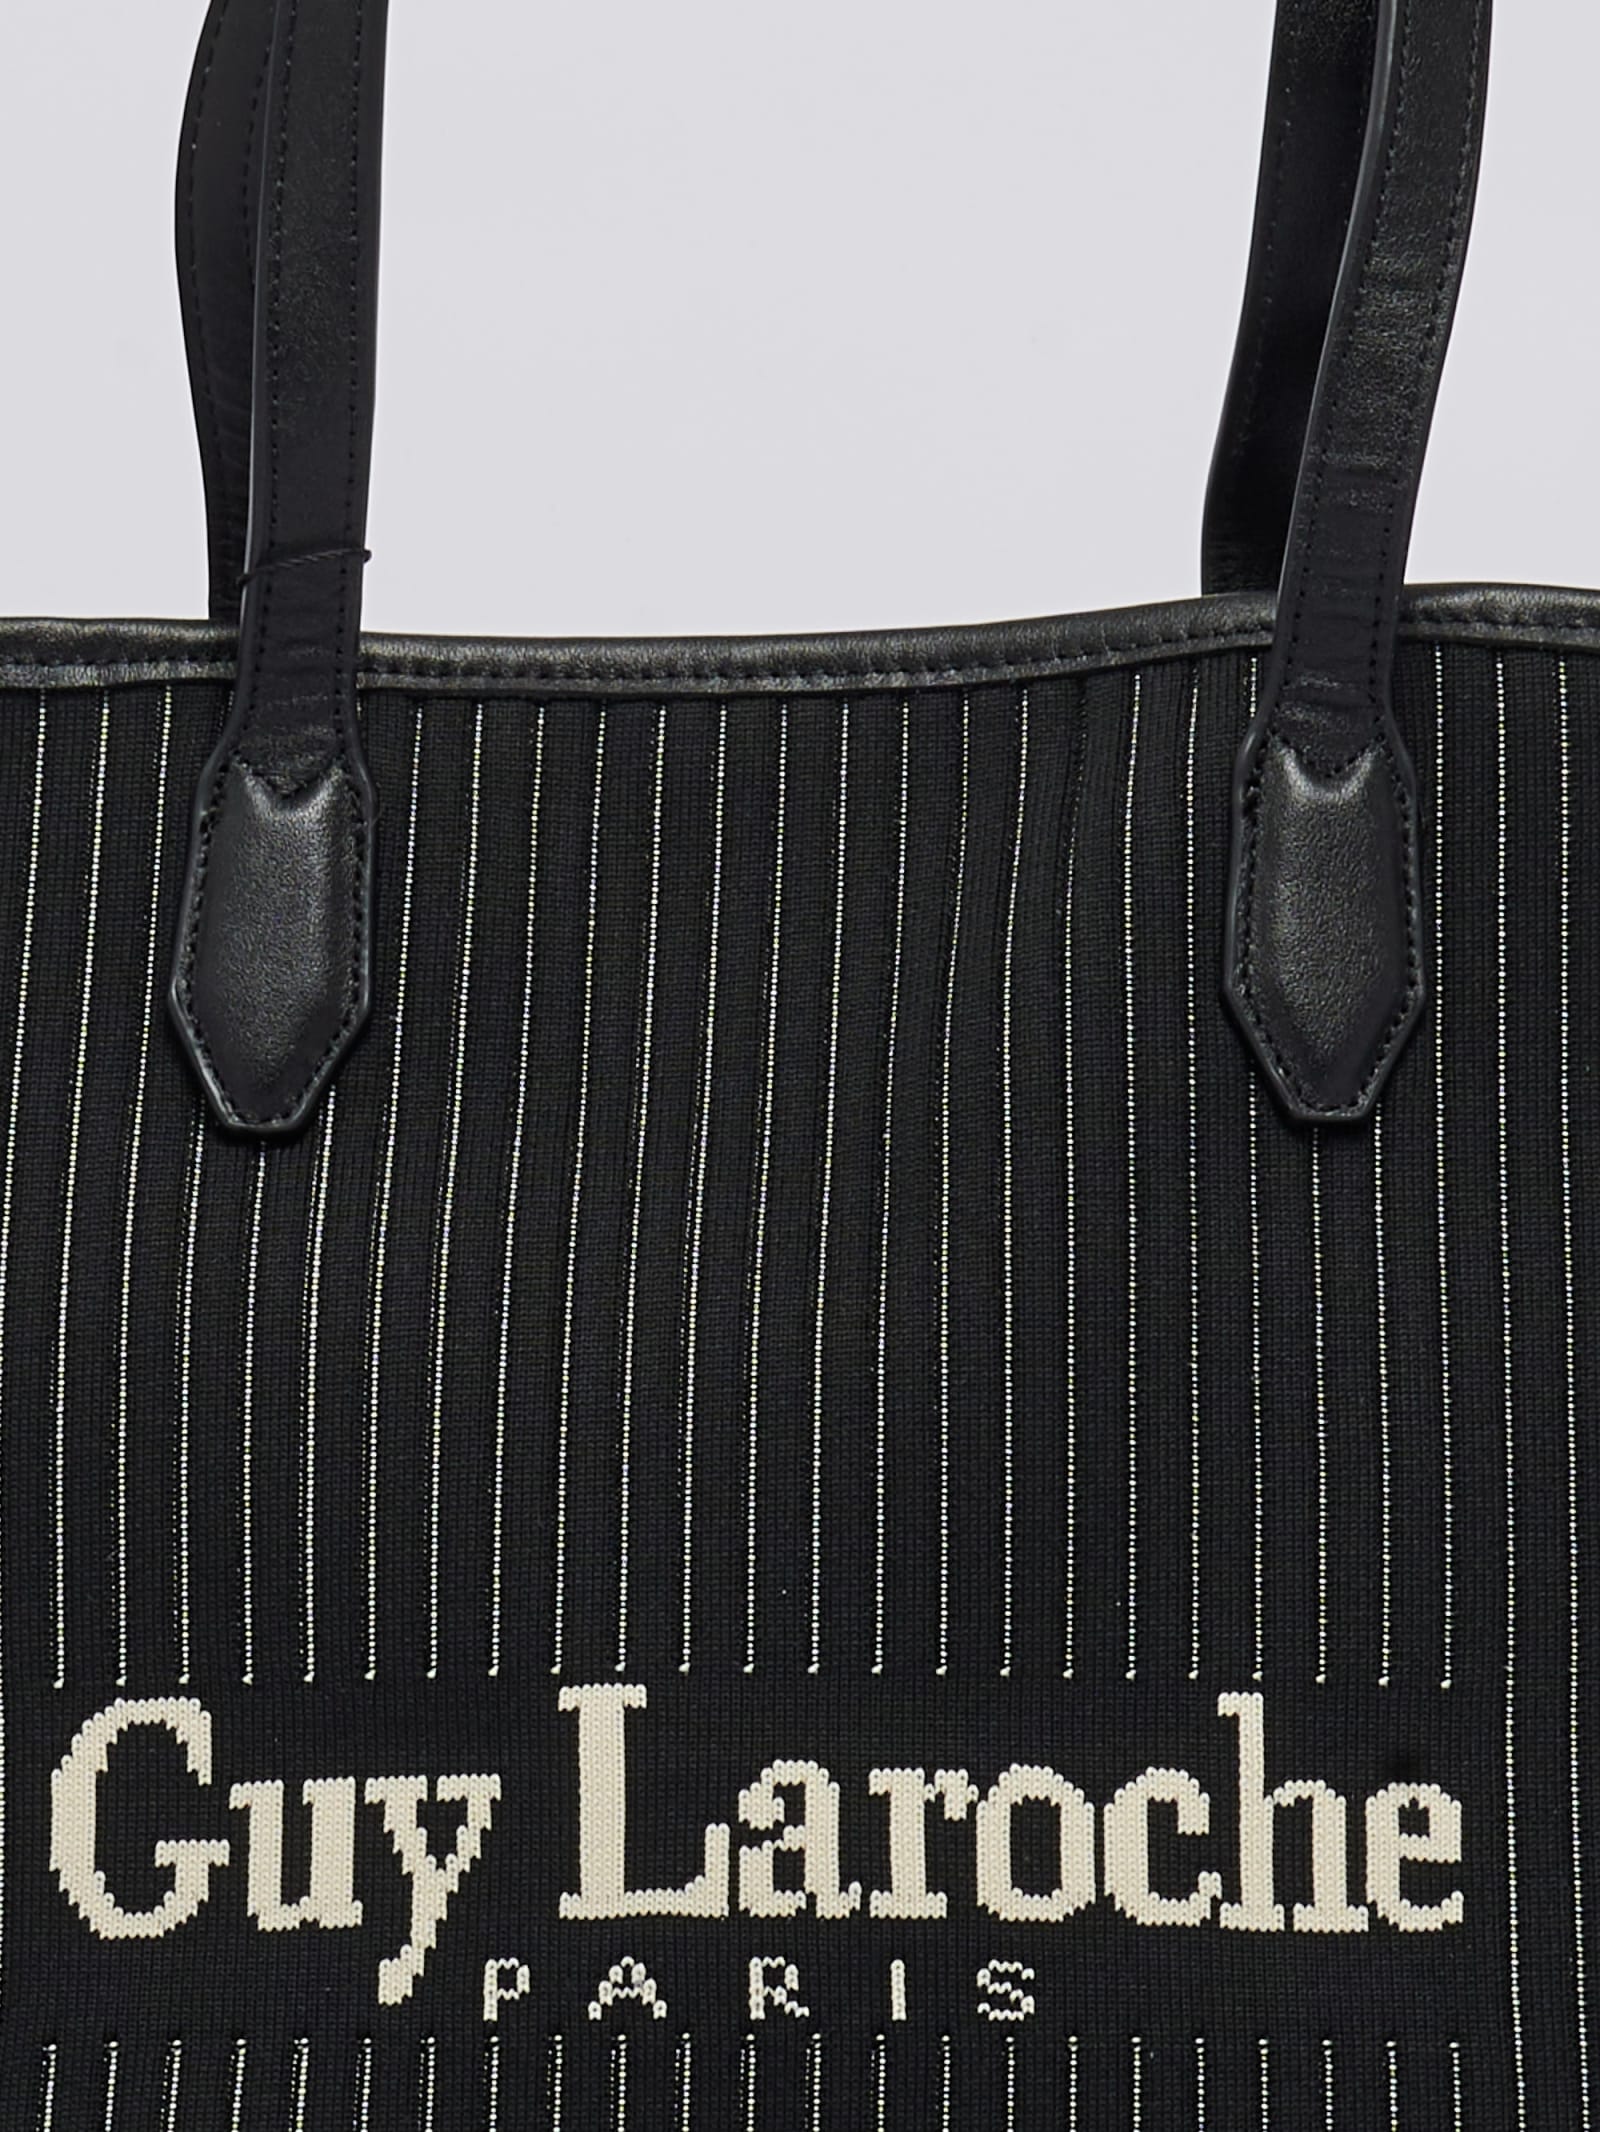 Guy Laroche Fabric Shoulder Bag In Black